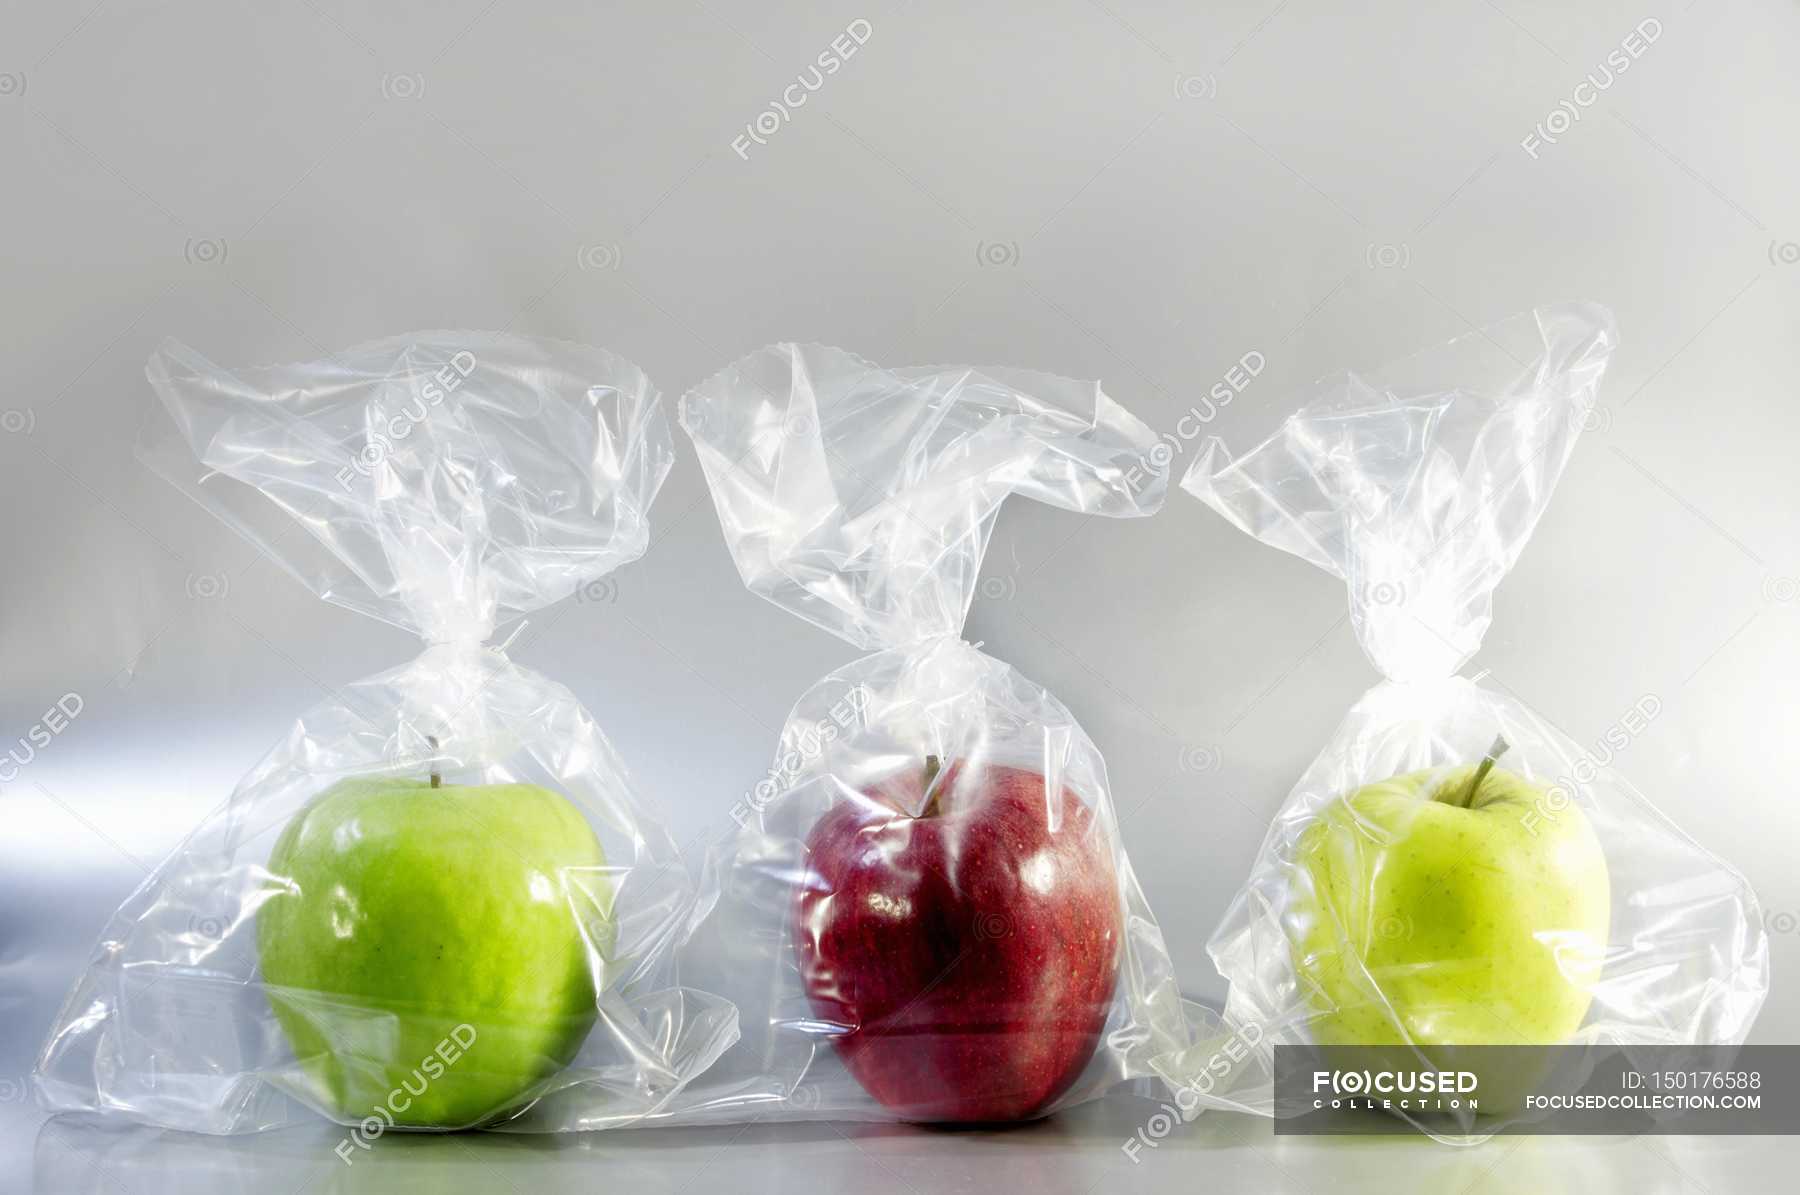 Farmer's Market Gala Apples - 4 lb bag | No Frills Online